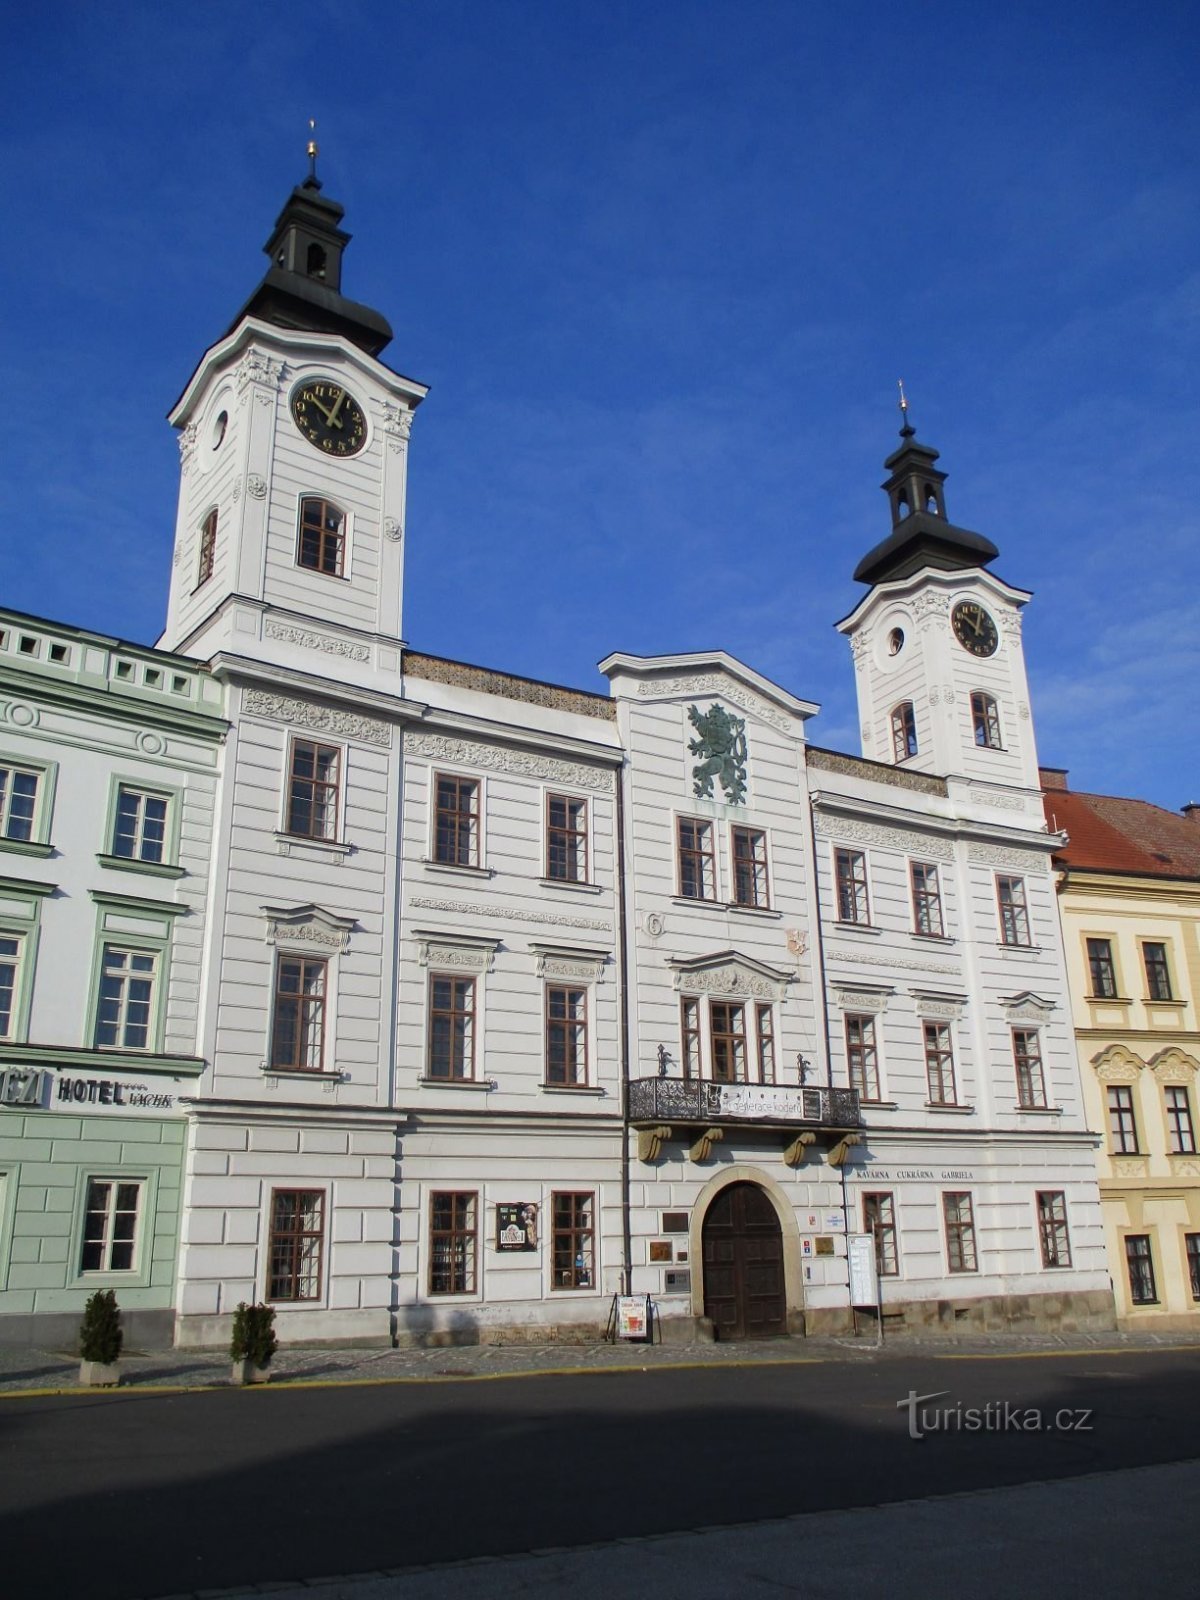 Tòa thị chính cũ số 1 trên Velké náměstí (Hradec Králové, 9.2.2020/XNUMX/XNUMX)